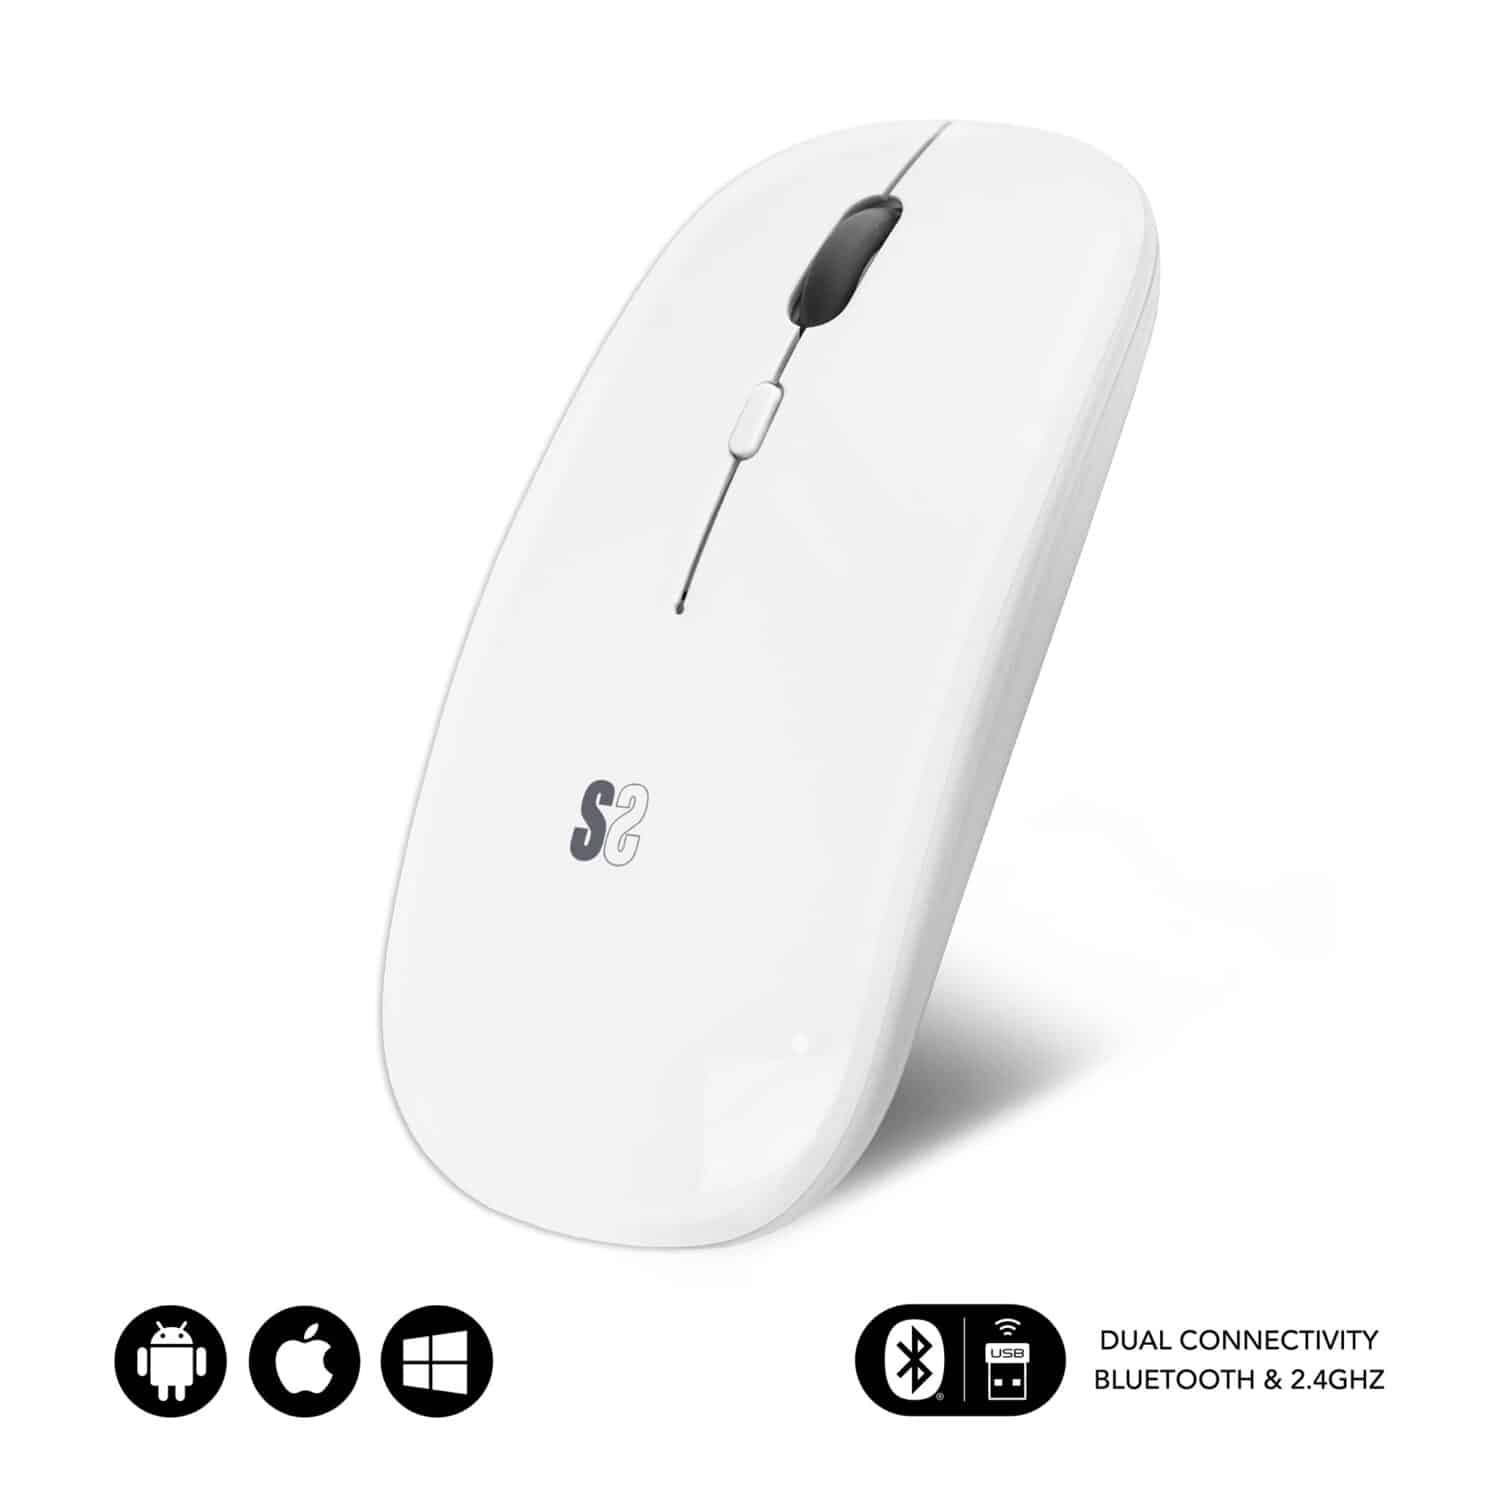 raton blanco conexion dual bluetooth y radiofrecuencia compatible con windows, ipad, android, mac. Estilo elegante plano